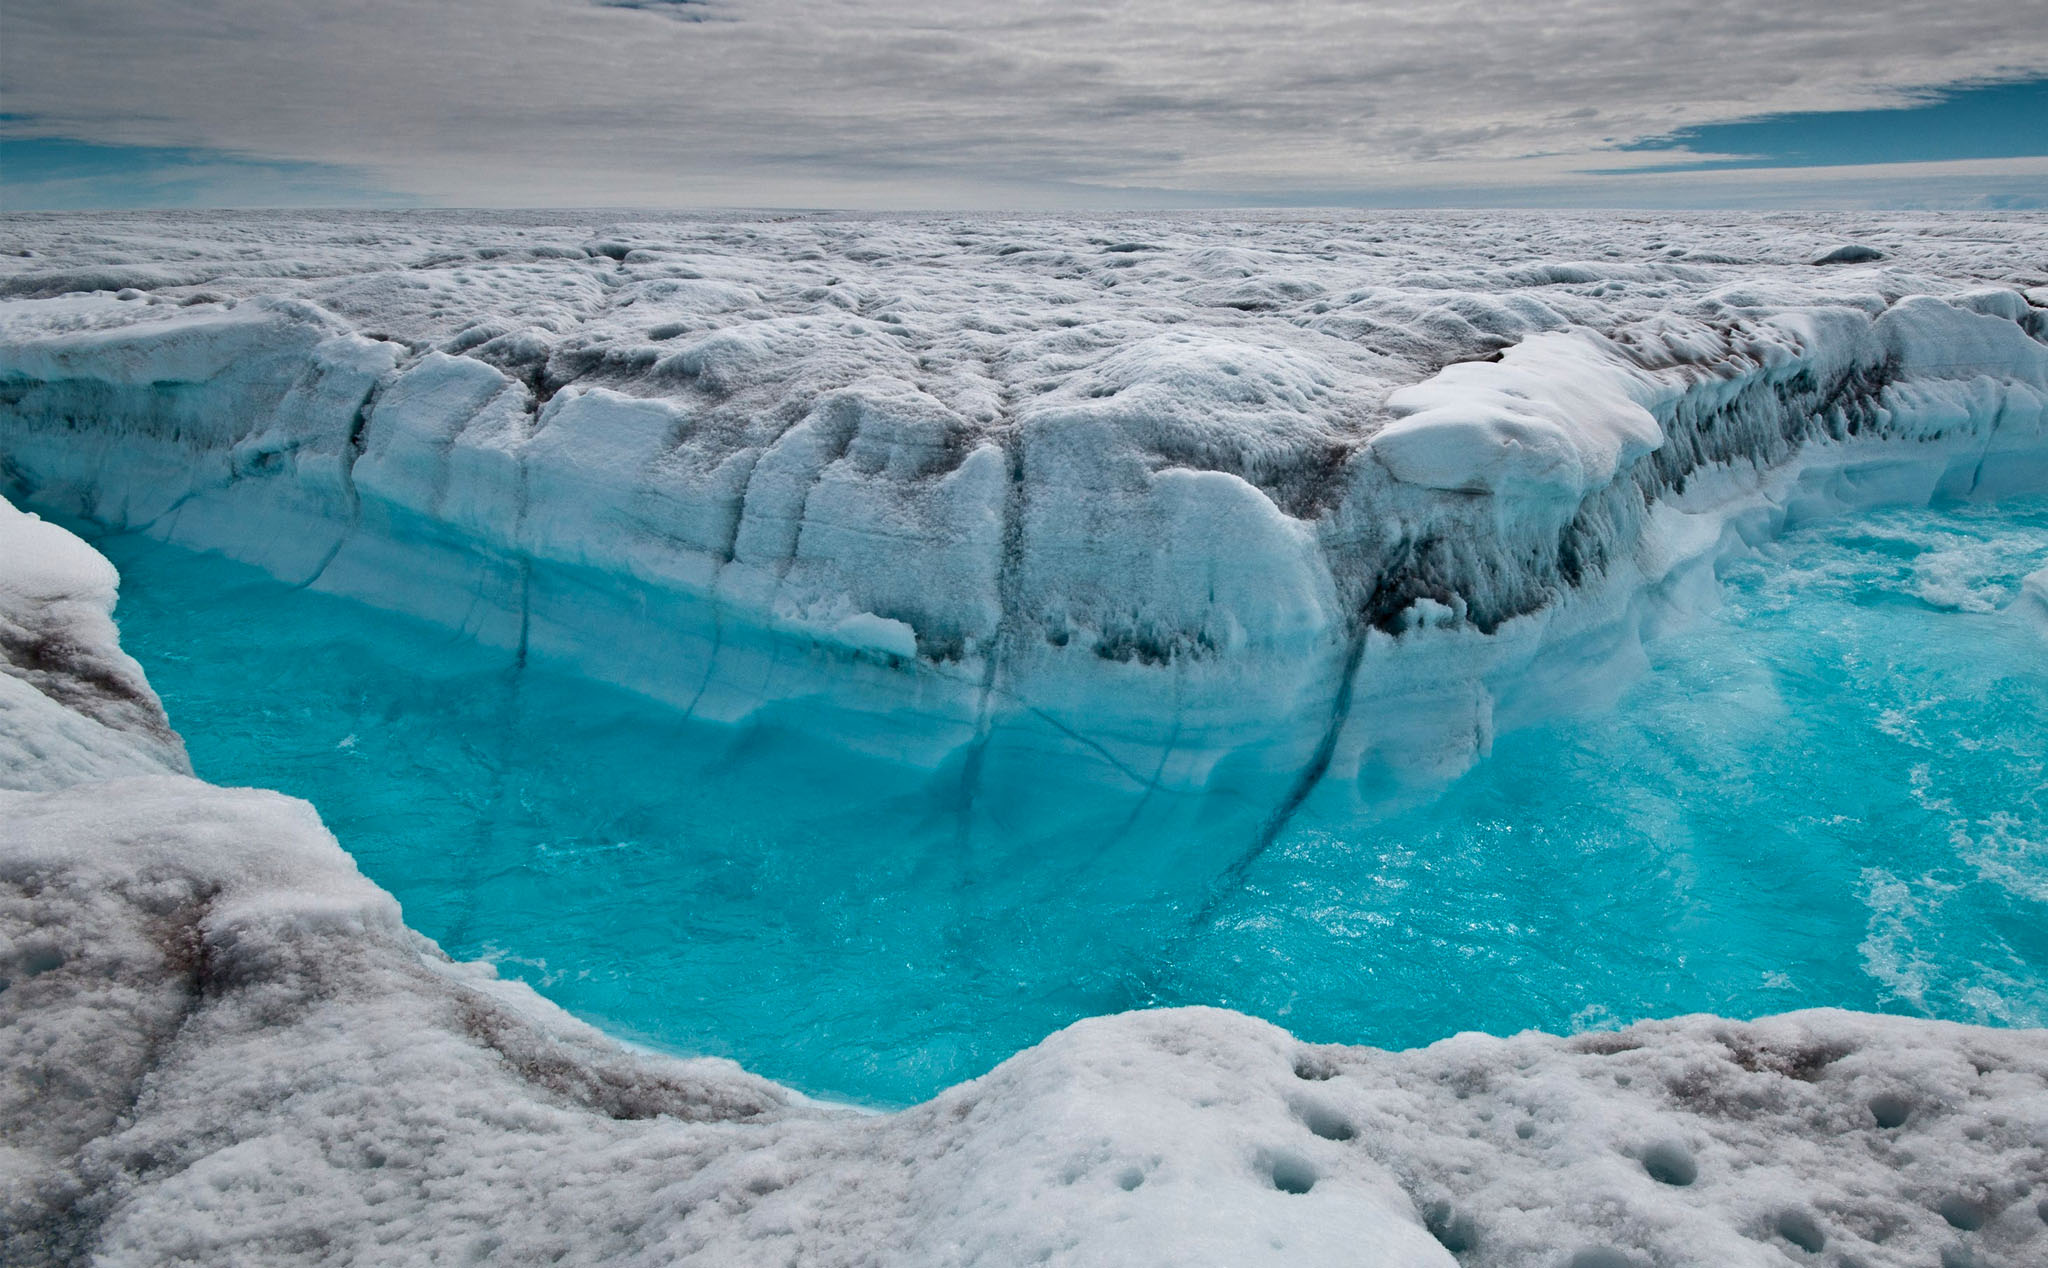 Lớp băng vĩnh cửu ở Greenland không còn "vĩnh cửu" nữa